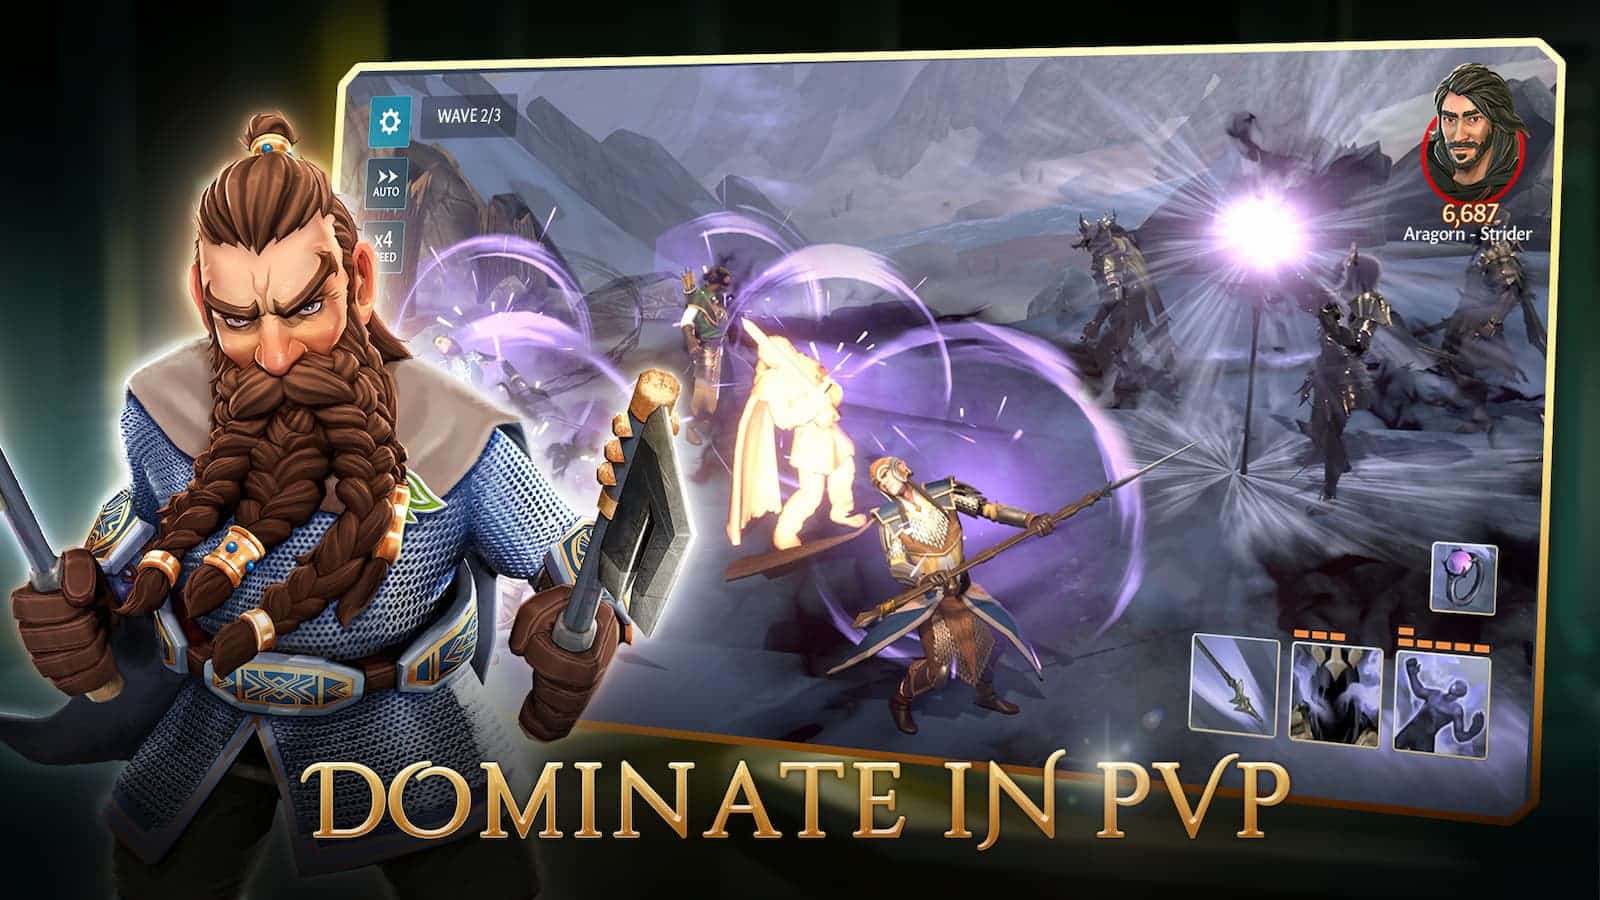 Cuatro jugadores compiten en un juego Jugador contra Jugador (PvP), con uno de ellos, Aragorn-Strider, dominando la competencia. Texto completo: ONDA 2/3 AUTO 6.687. ×4 Aragorn - Strider DEED DOMINA EN PVP